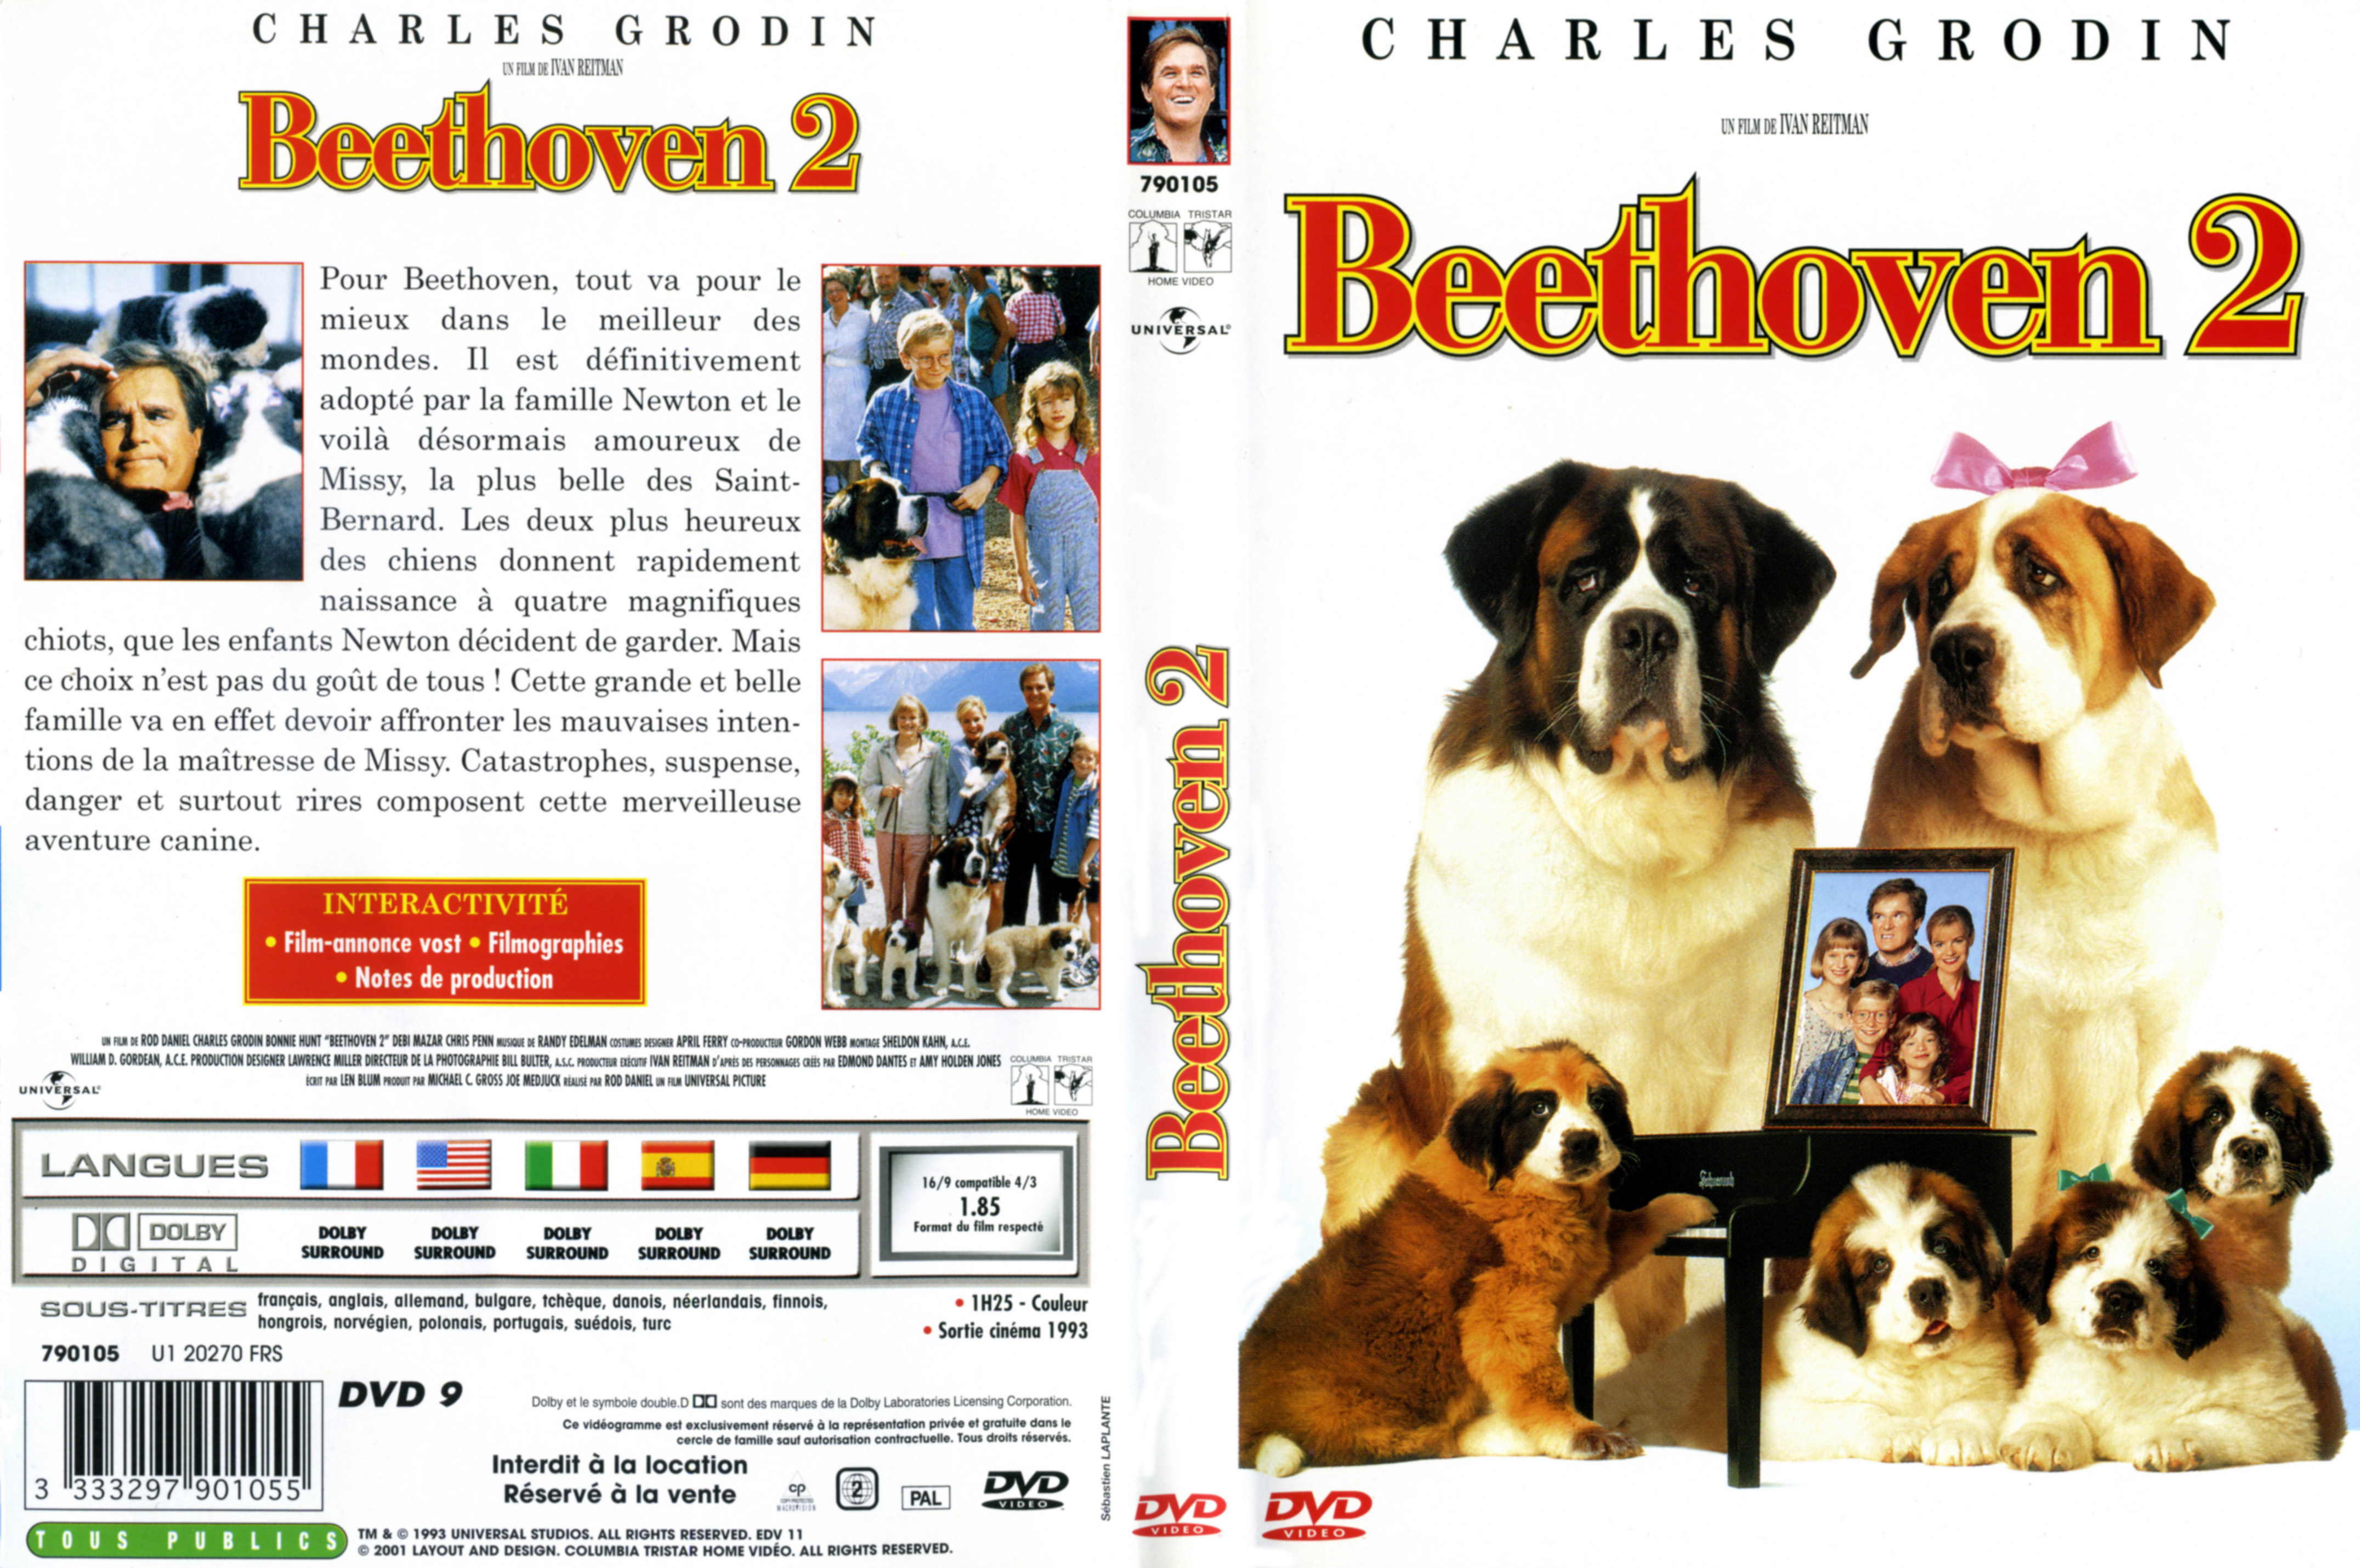 Jaquette DVD Beethoven 2 v2